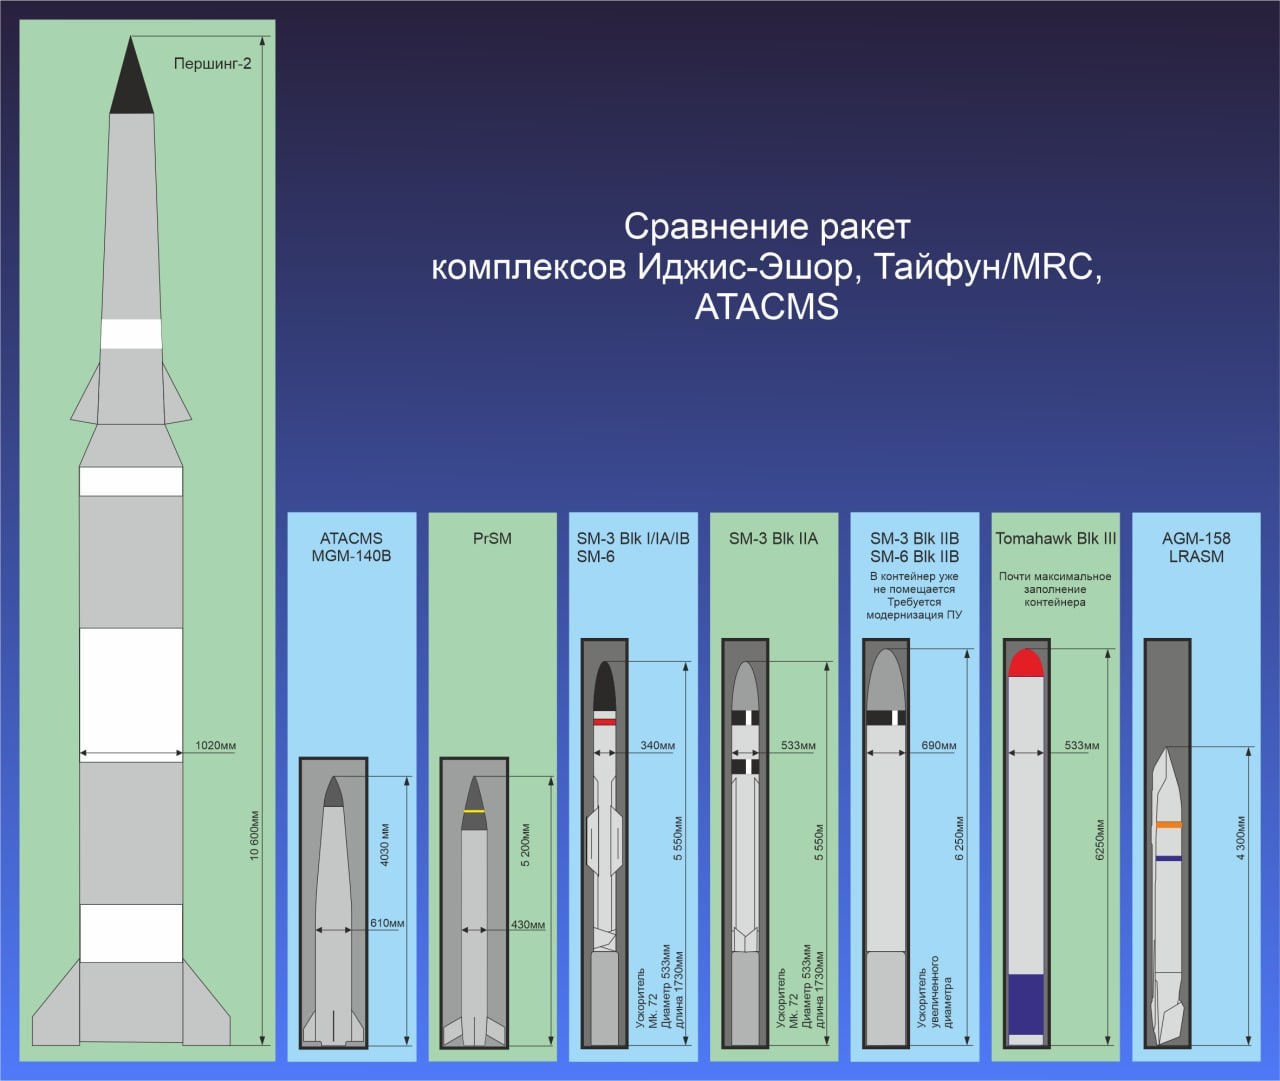 На схеме показана и MGM-140 ATACMS для сравнения.